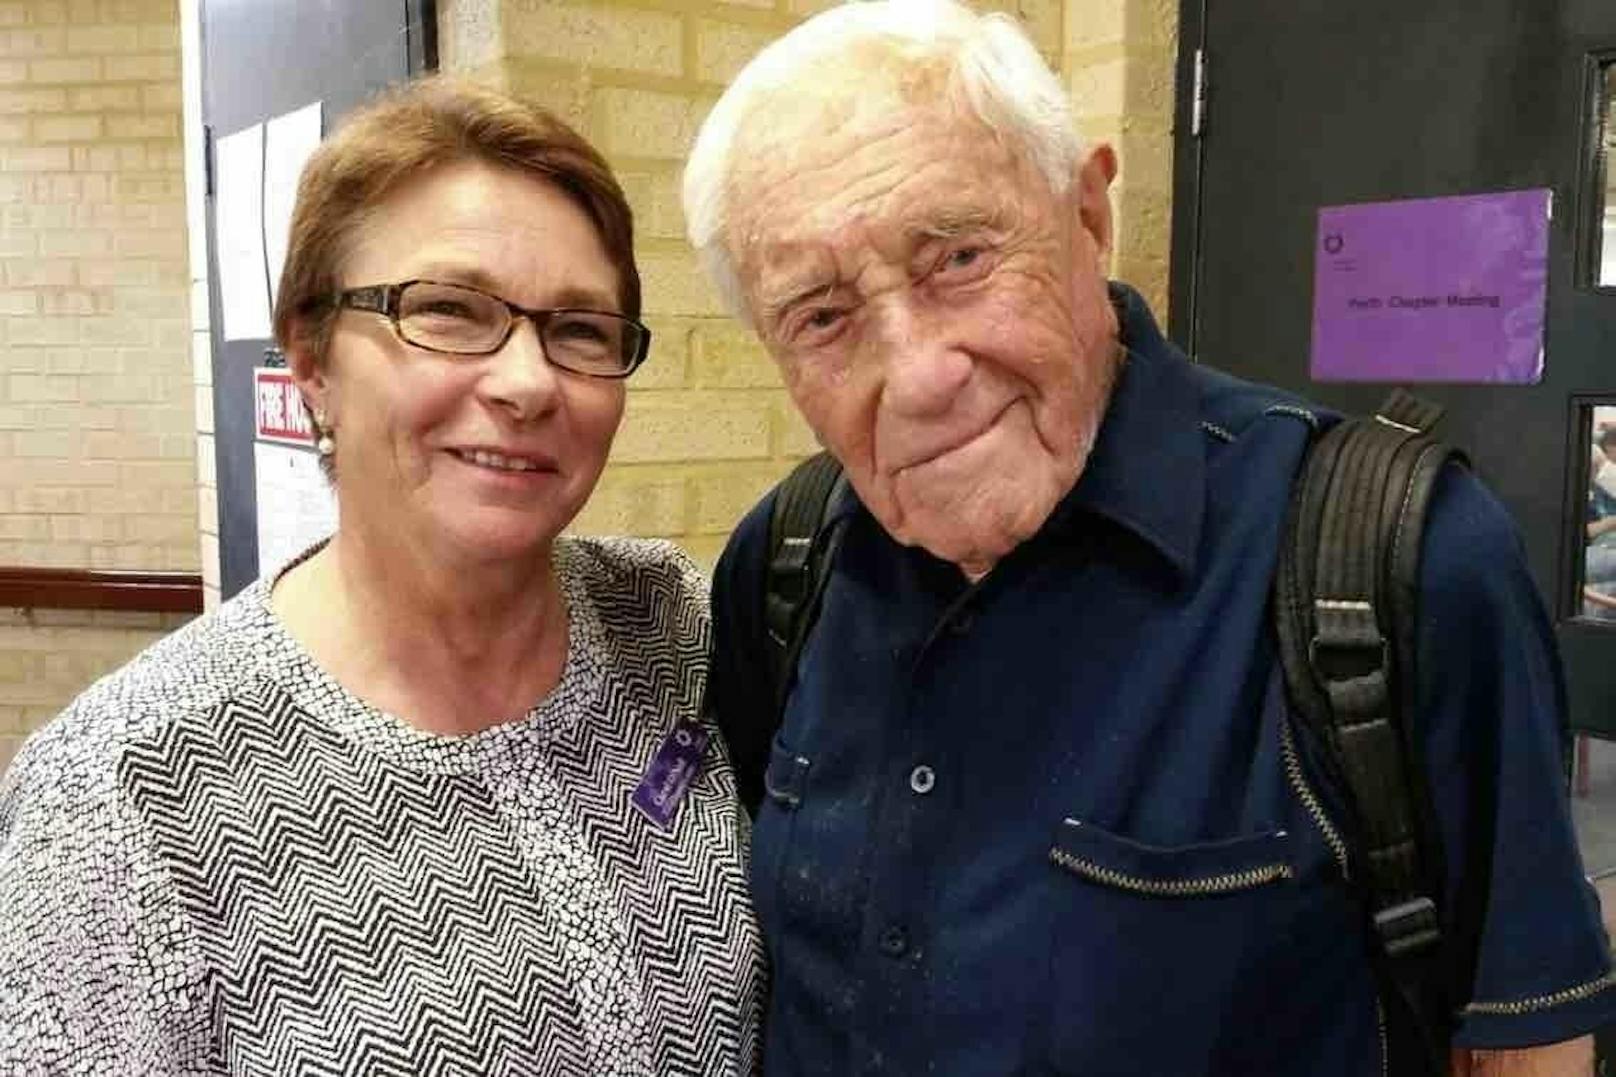 Goodall setzt sich schon länger für eine Legalisierung der aktiven Sterbehilfe in Australien ein. "Jeder über 50 oder 60 sollte frei sein zu entscheiden, ob er weiterleben möchte oder nicht", so der 104-Jährige am Montag.